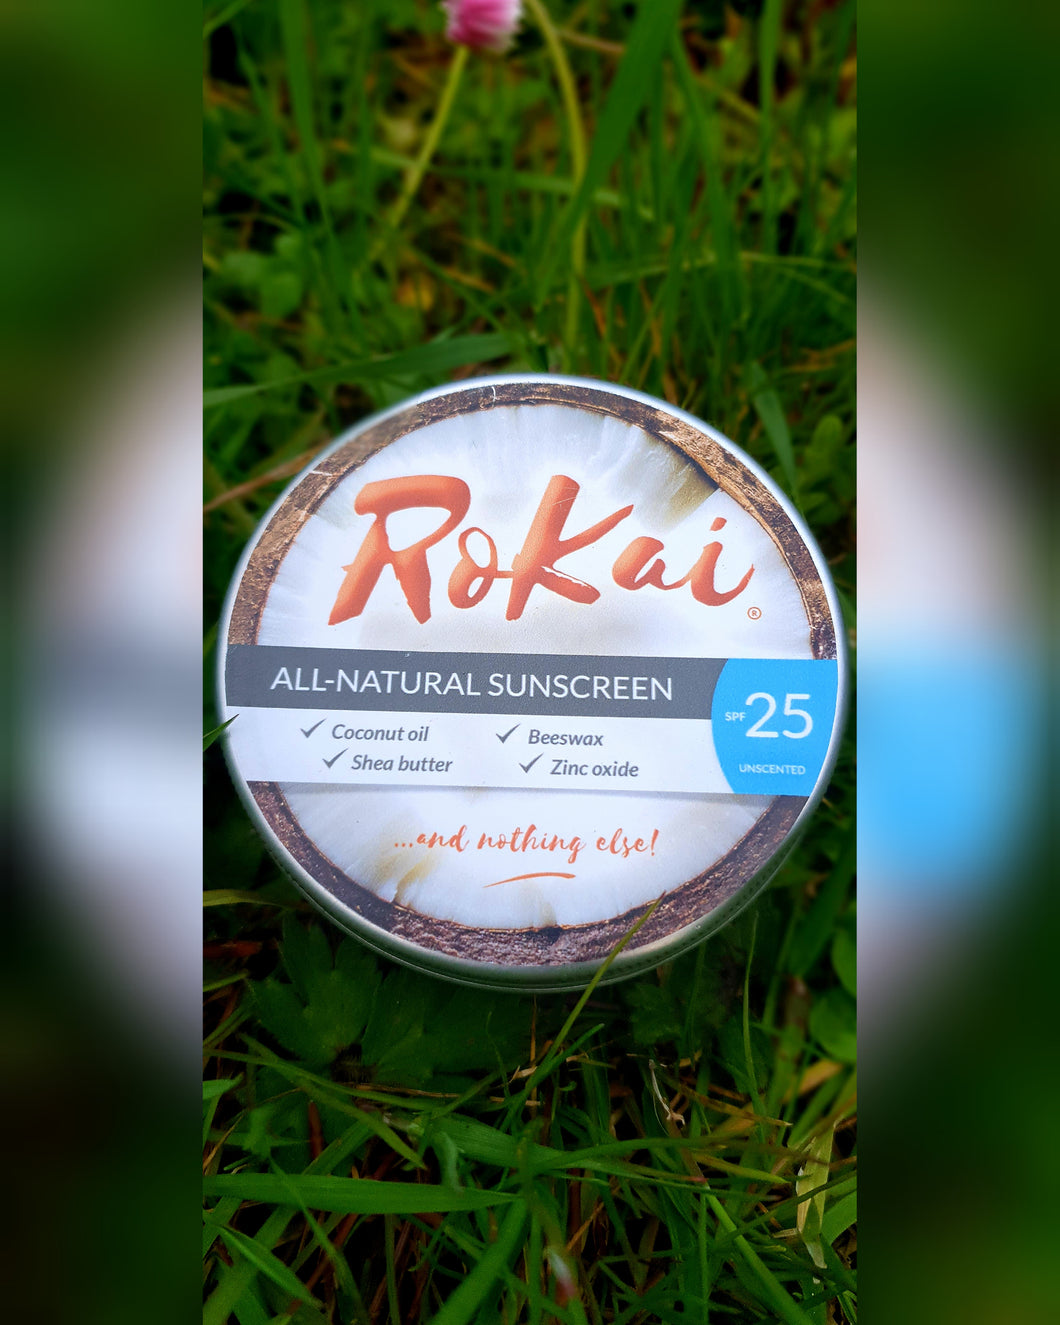 Natural Sunscreen- RoKai, Factor 25